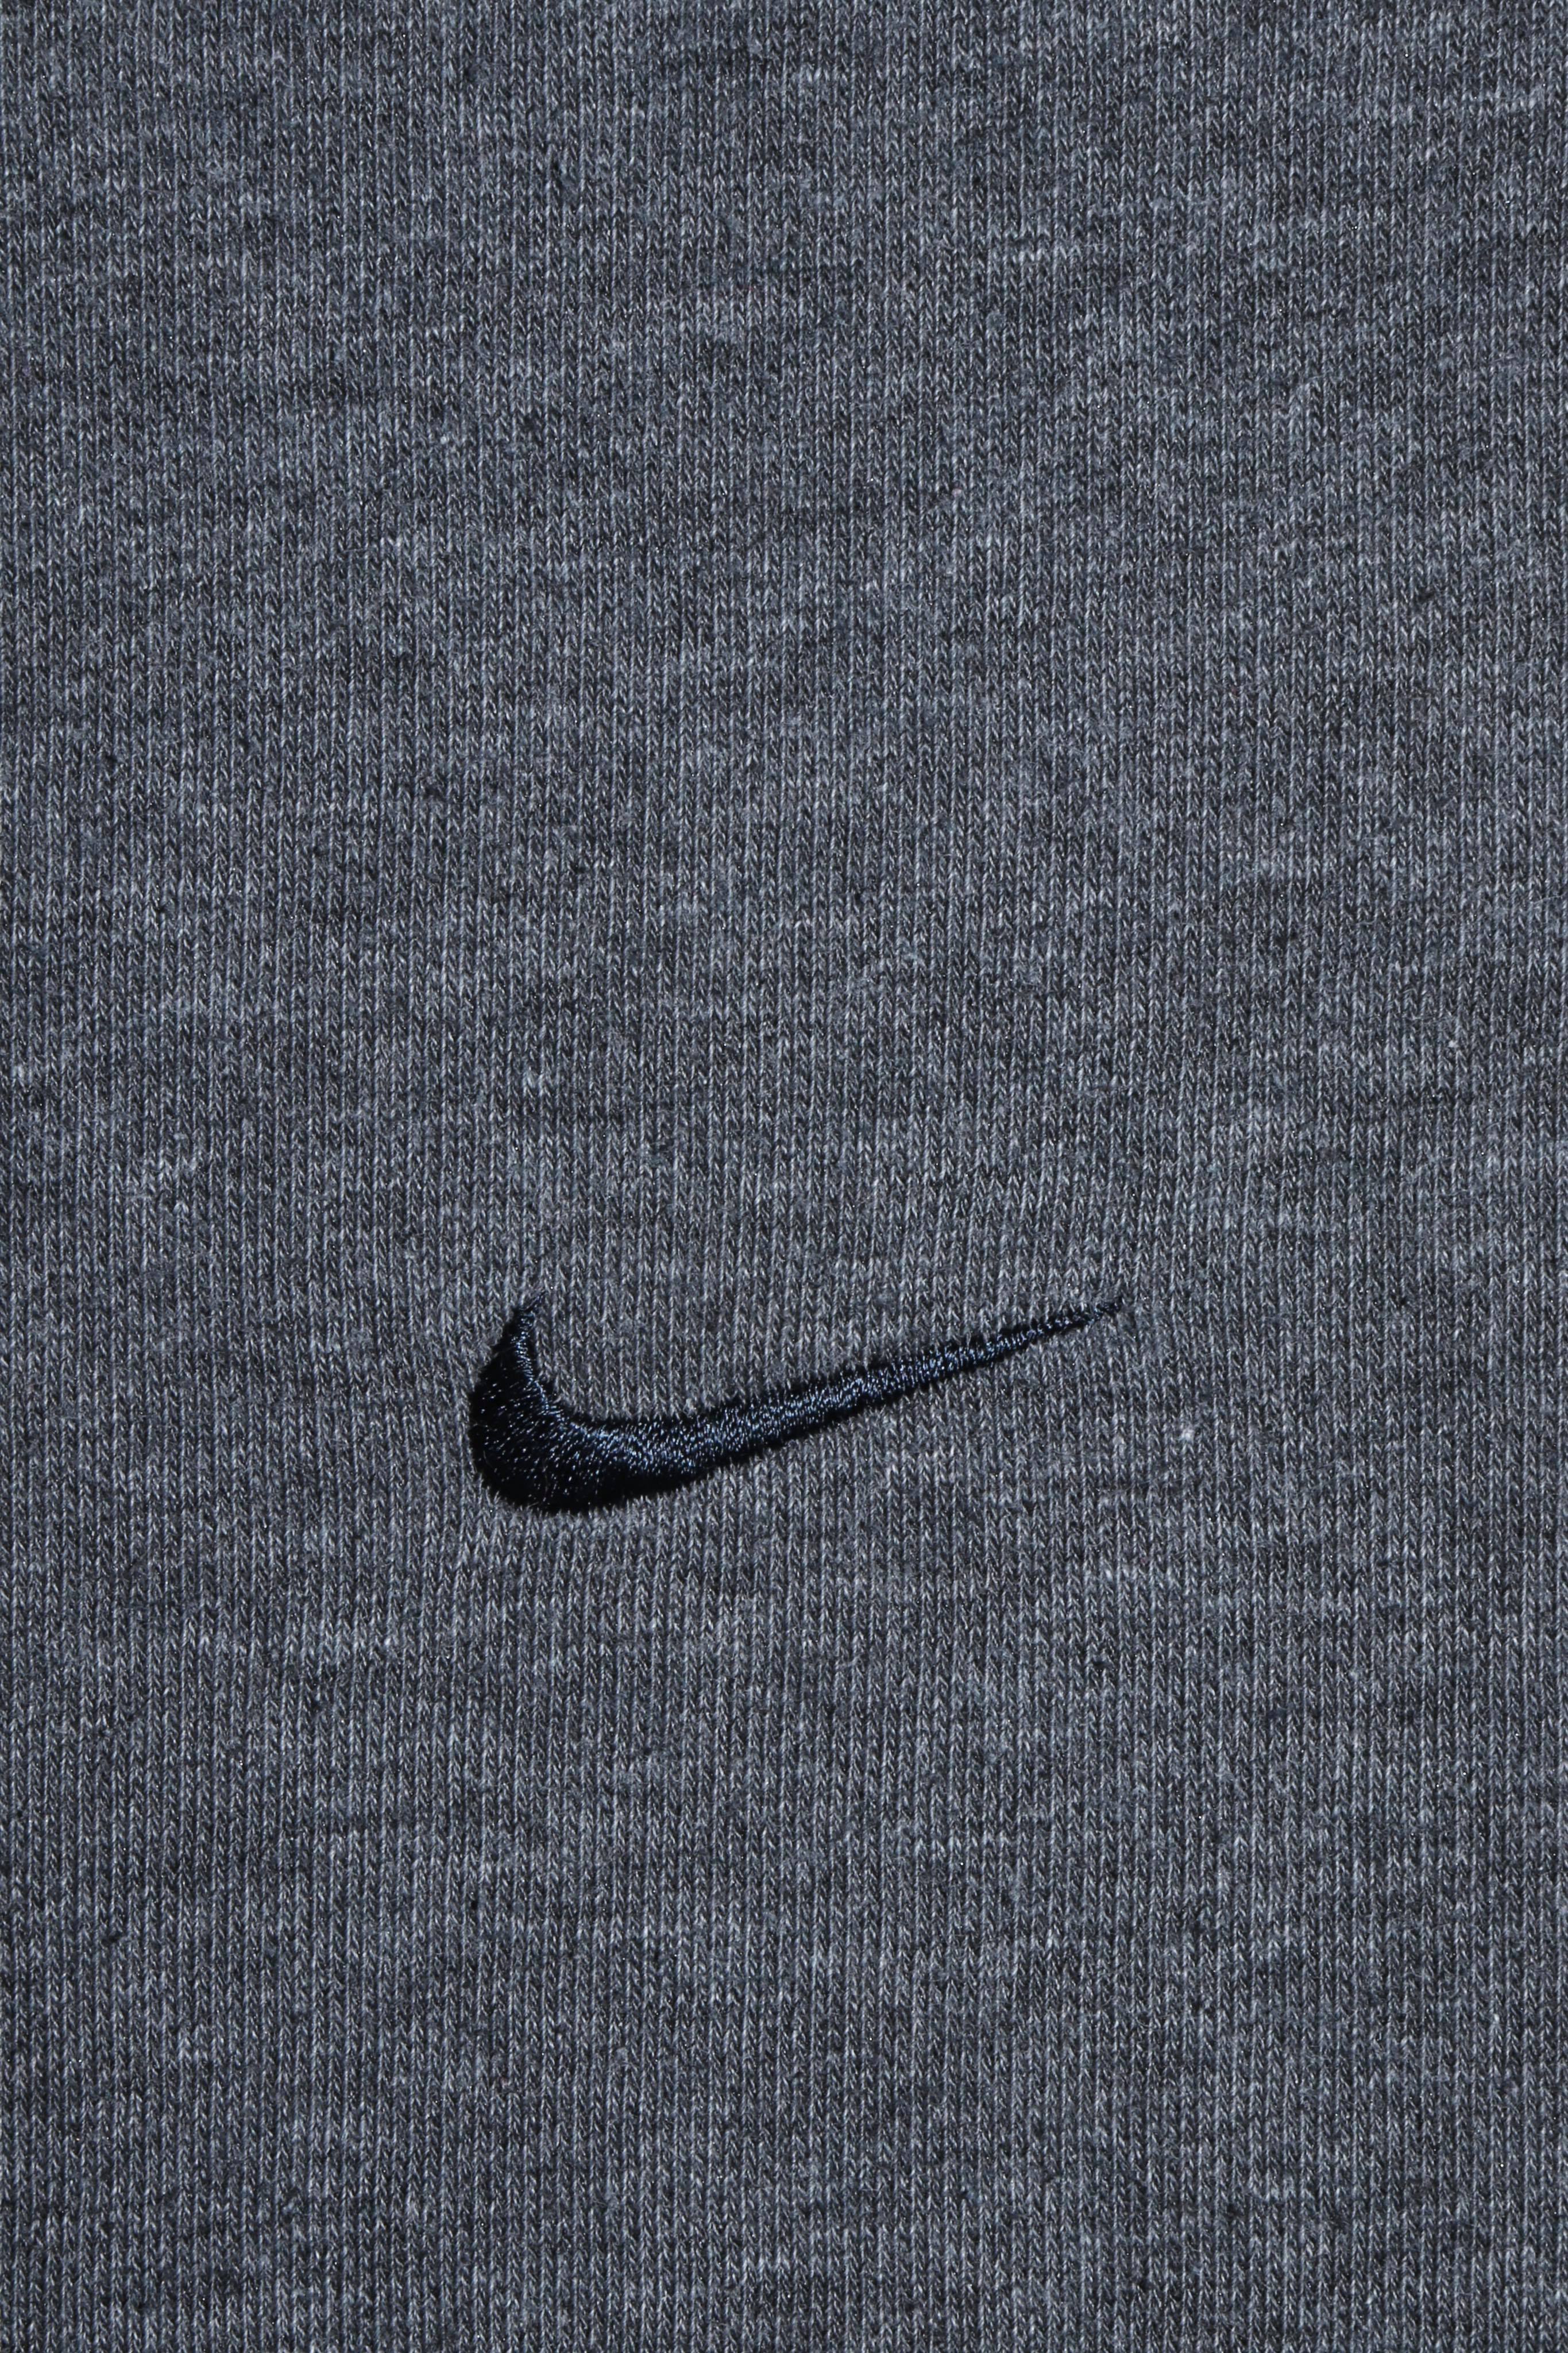 Nike Early 2000s Dark Grey Sweatshirt Vintage